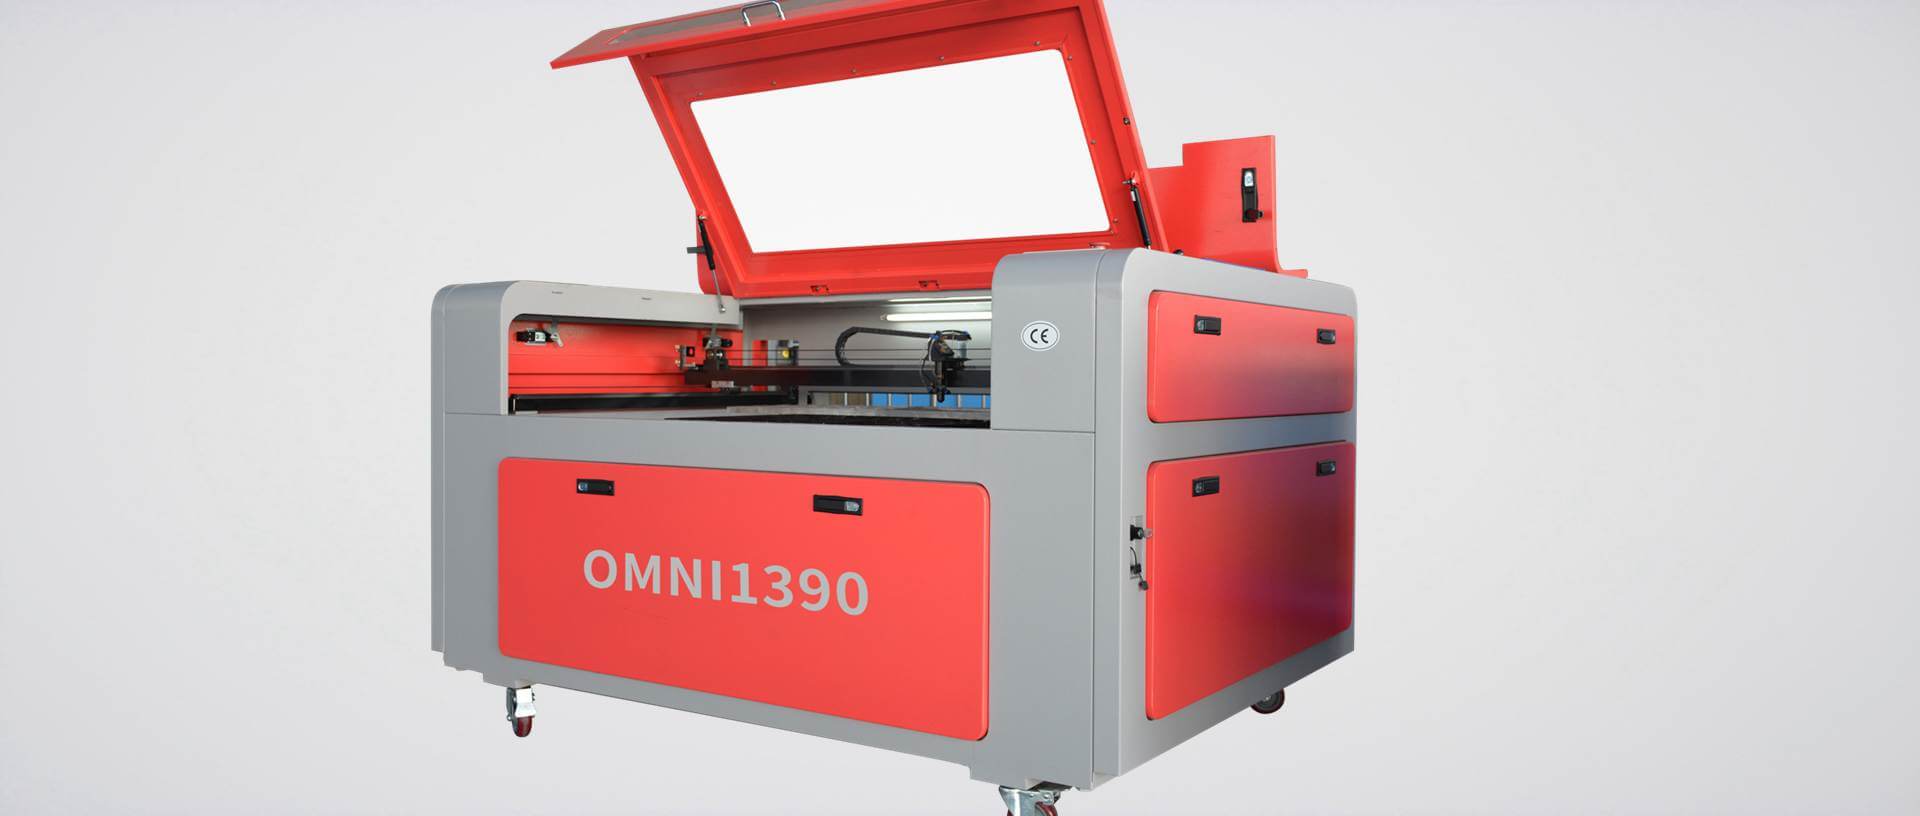 omni laser engraving machine - آلة ليزر CO2